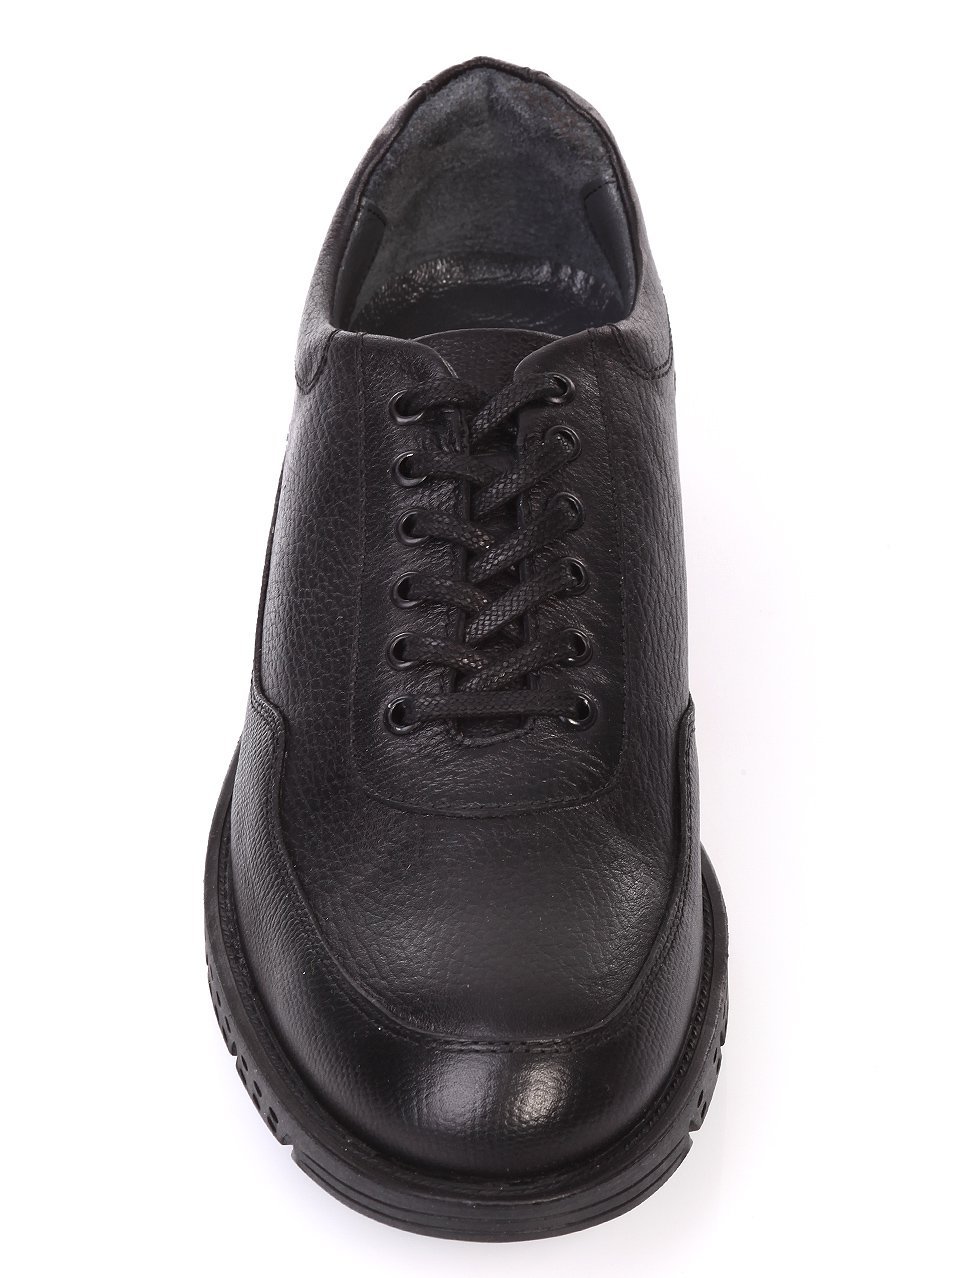 Ежедневни мъжки обувки от естествена кожа в черно 619-207 black